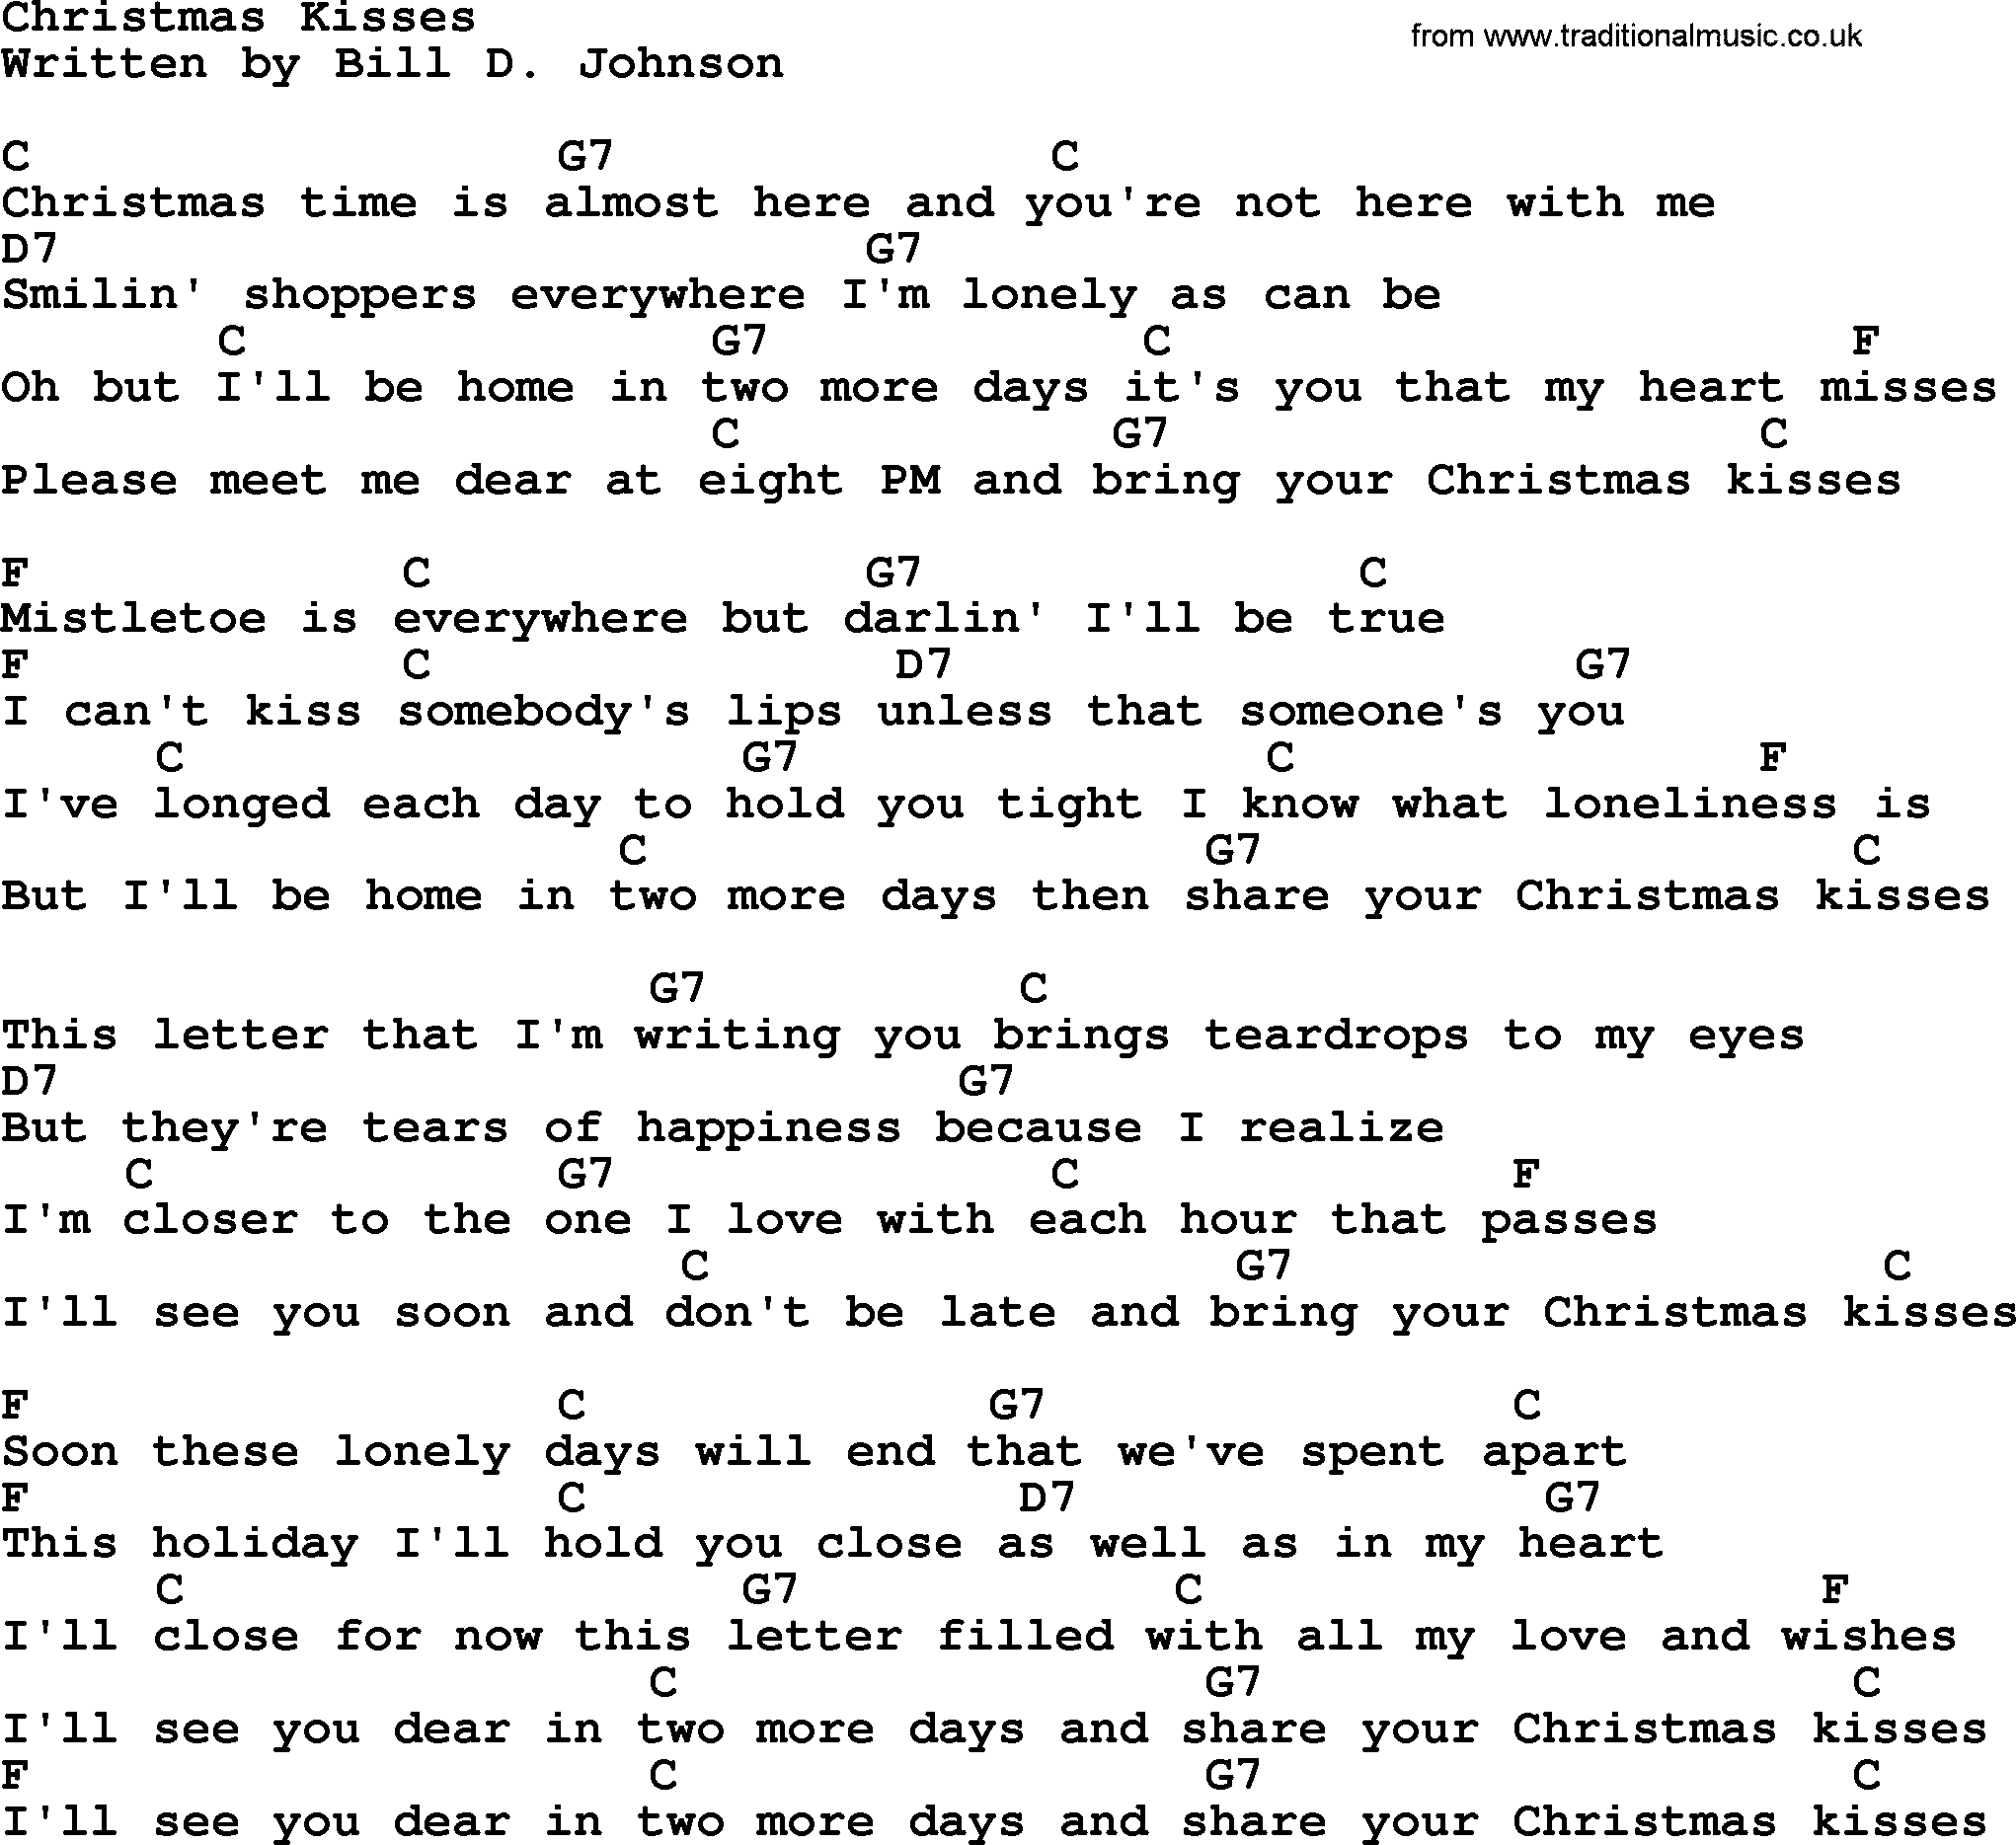 Marty Robbins song: Christmas Kisses, lyrics and chords